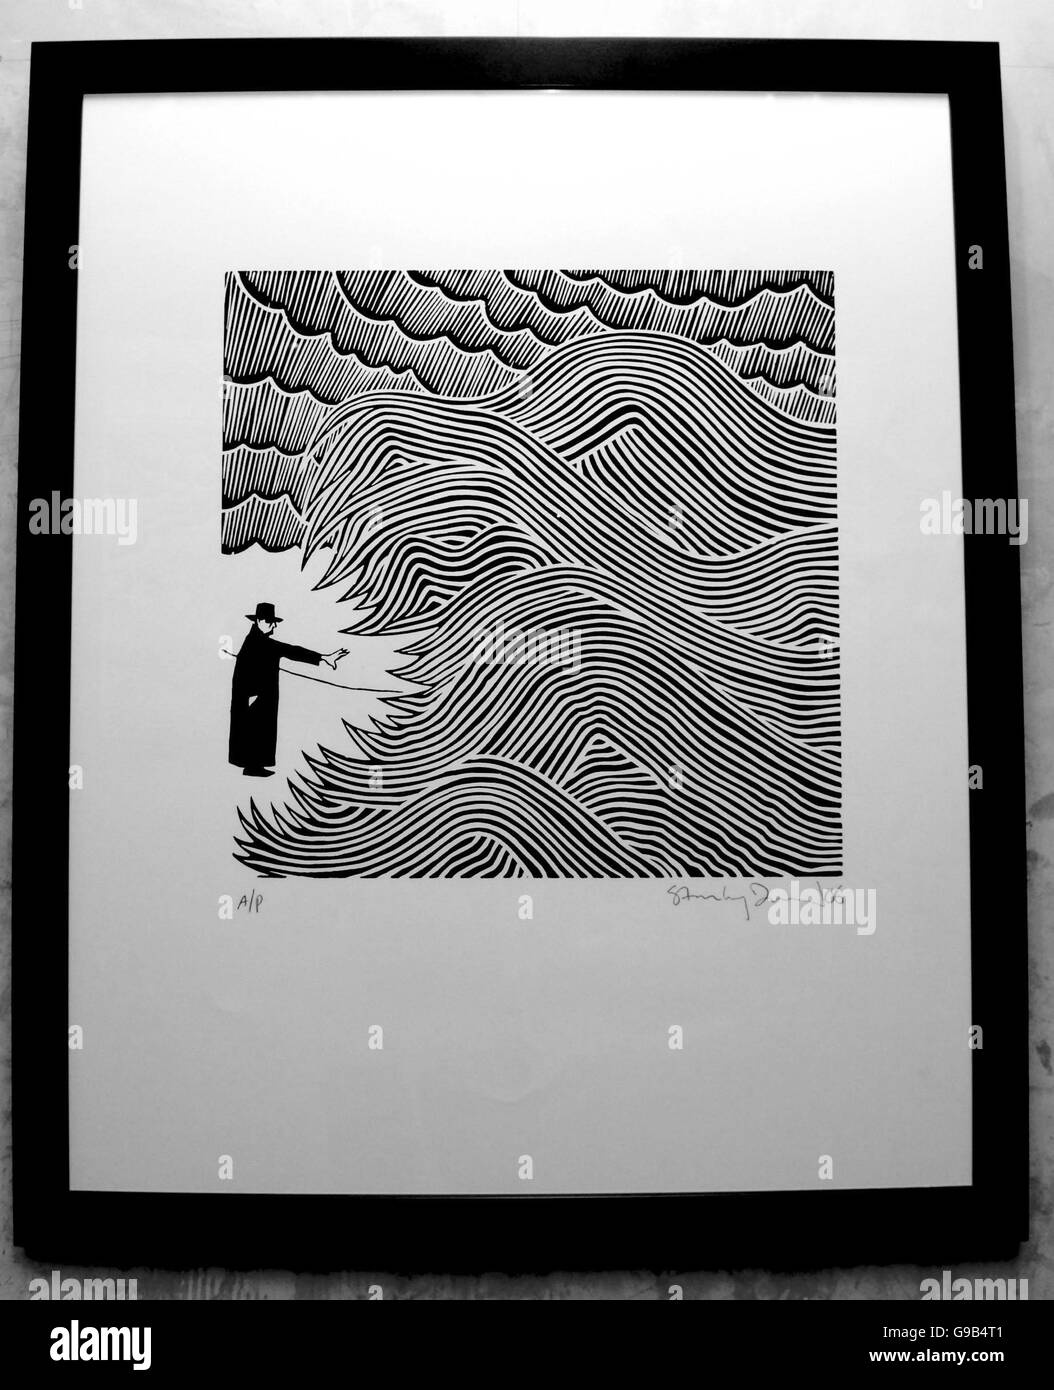 Un detalle de la obra de arte de la portada del primer álbum en solitario de Radiohead, Thom Yorke, titulado 'The Eraser', diseñado por el artista Stanley Donwood, en exhibición en Lazarides Gallery en Soho, centro de Londres, junto con otras piezas de su obra, como parte de su exposición 'London views', jueves 18 de mayo de 2006. Foto de stock